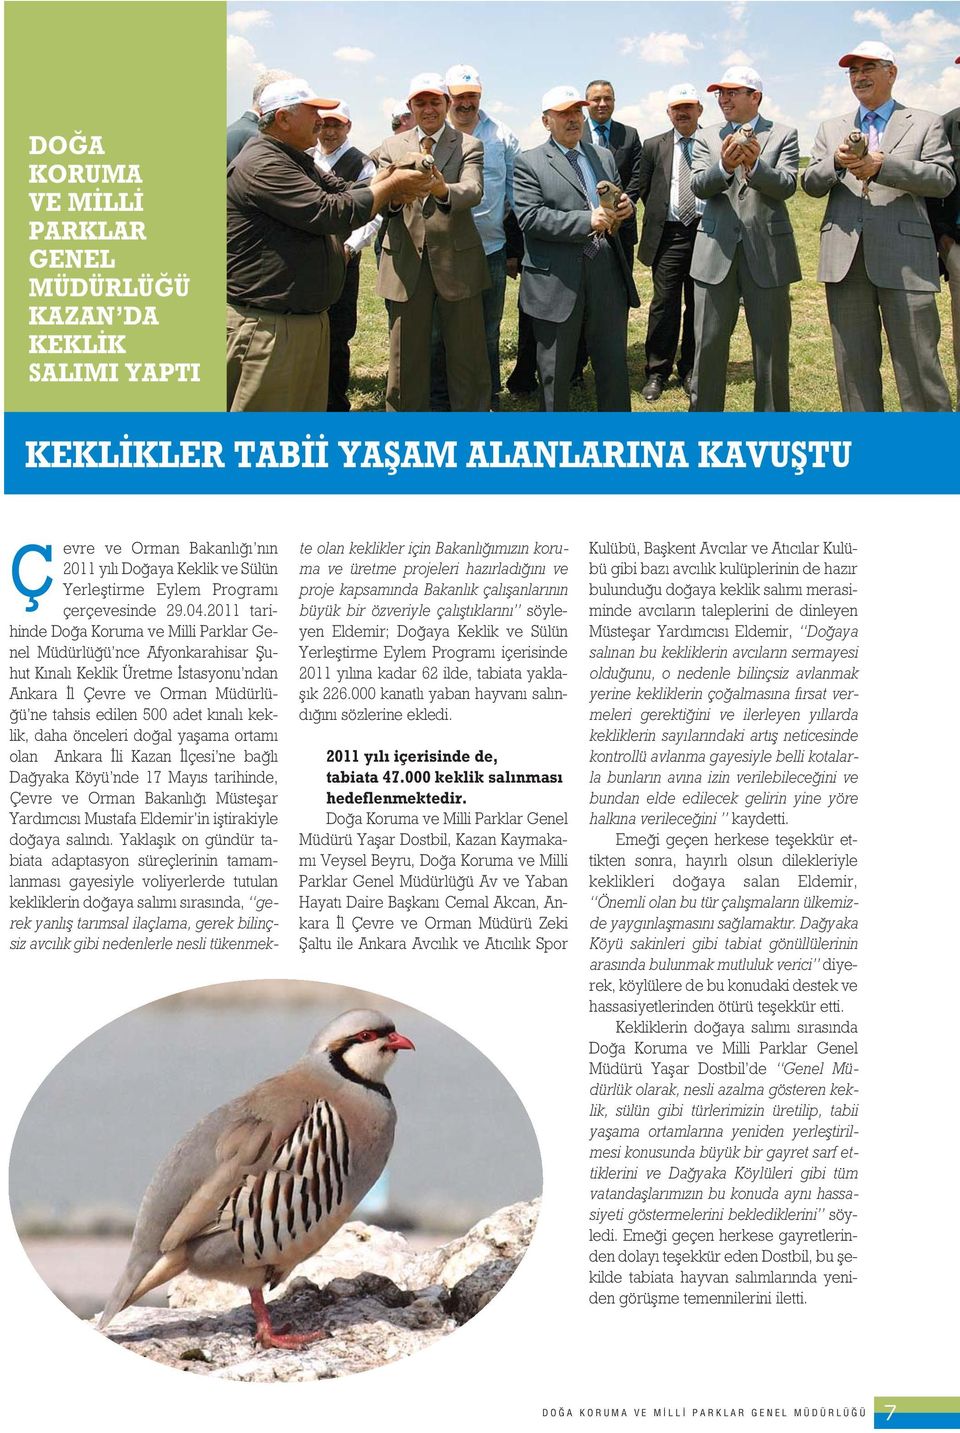 2011 tarihinde Do a Koruma ve Milli Parklar Genel Müdürlü ü nce Afyonkarahisar fiuhut K nal Keklik Üretme stasyonu ndan Ankara l Çevre ve Orman Müdürlü- ü ne tahsis edilen 500 adet k nal keklik, daha